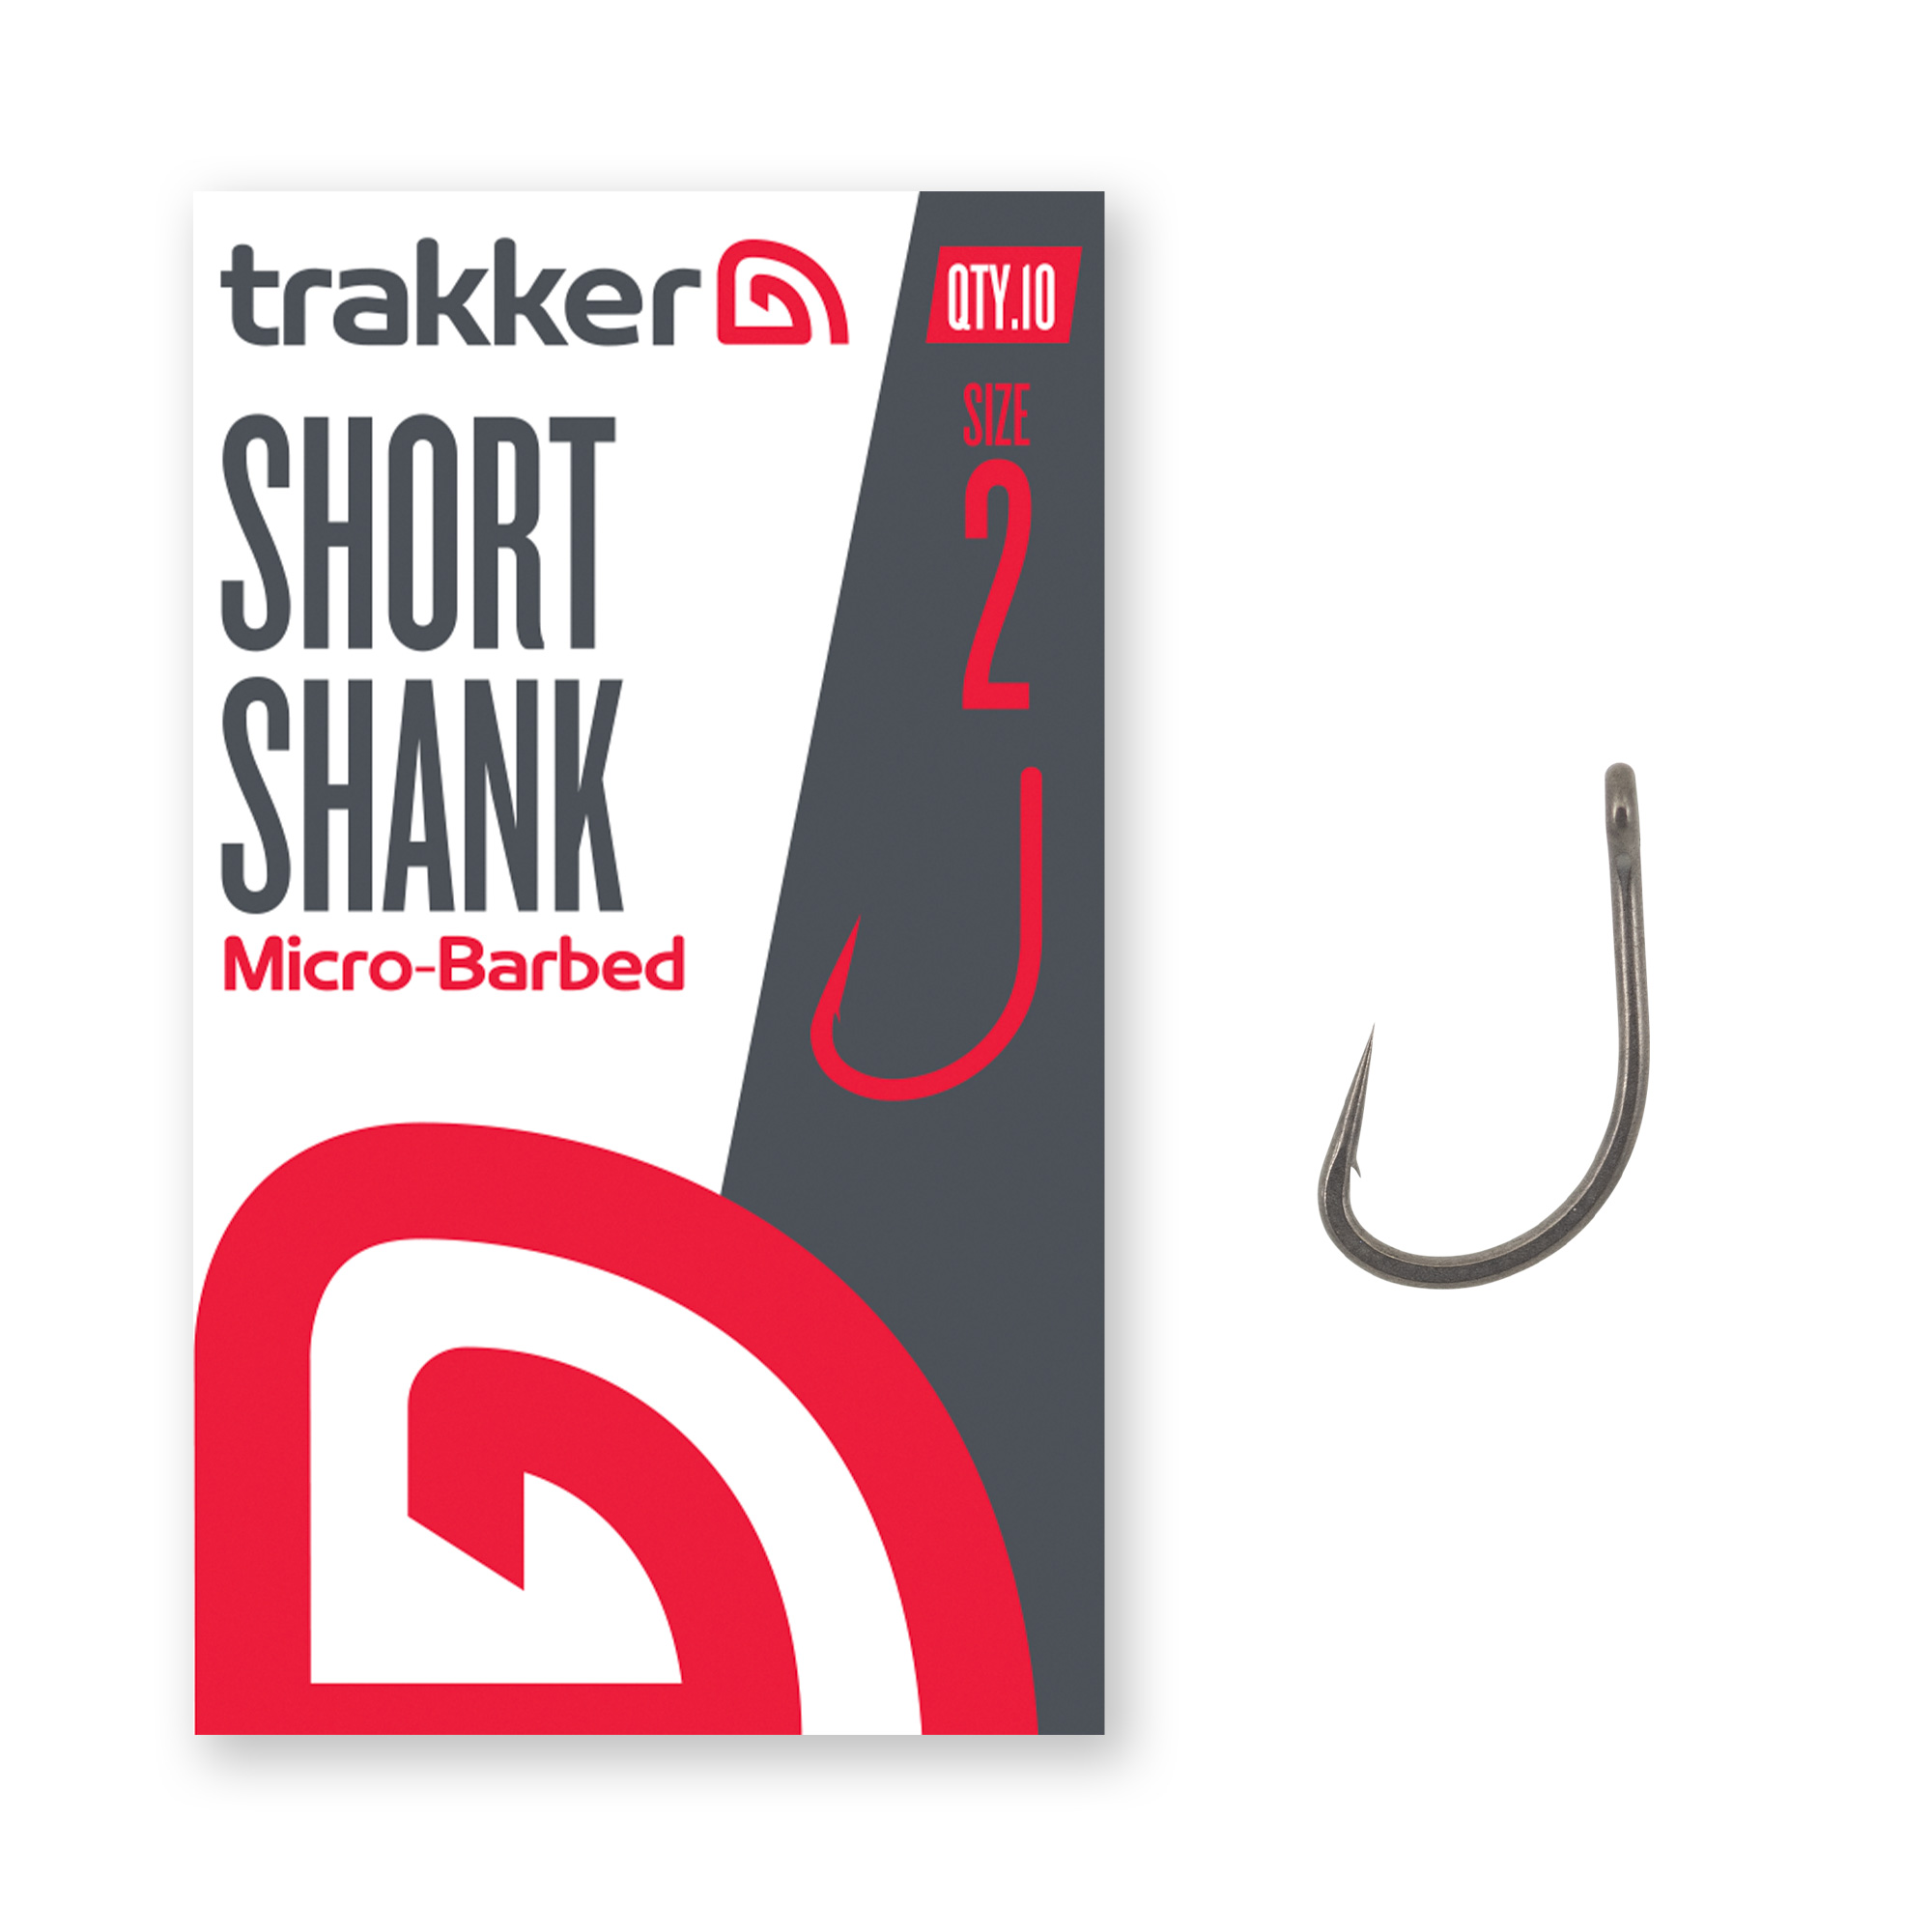 Trakker Short Shank Hooks Micro Barbed (10 Stuks)